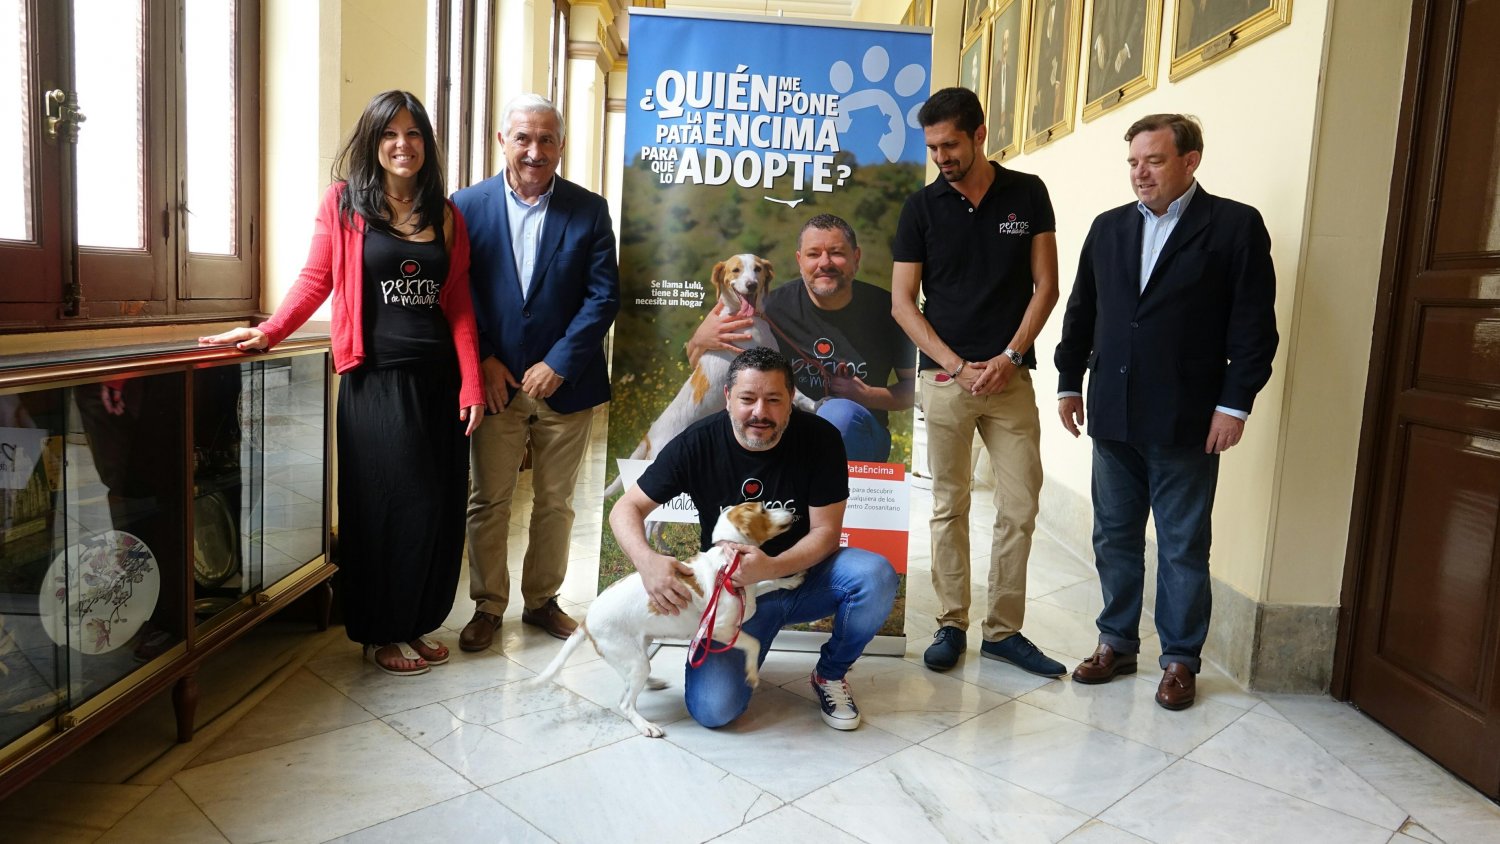 El Ayuntamiento de Málaga lanza una campaña para impulsar la adopción de perros